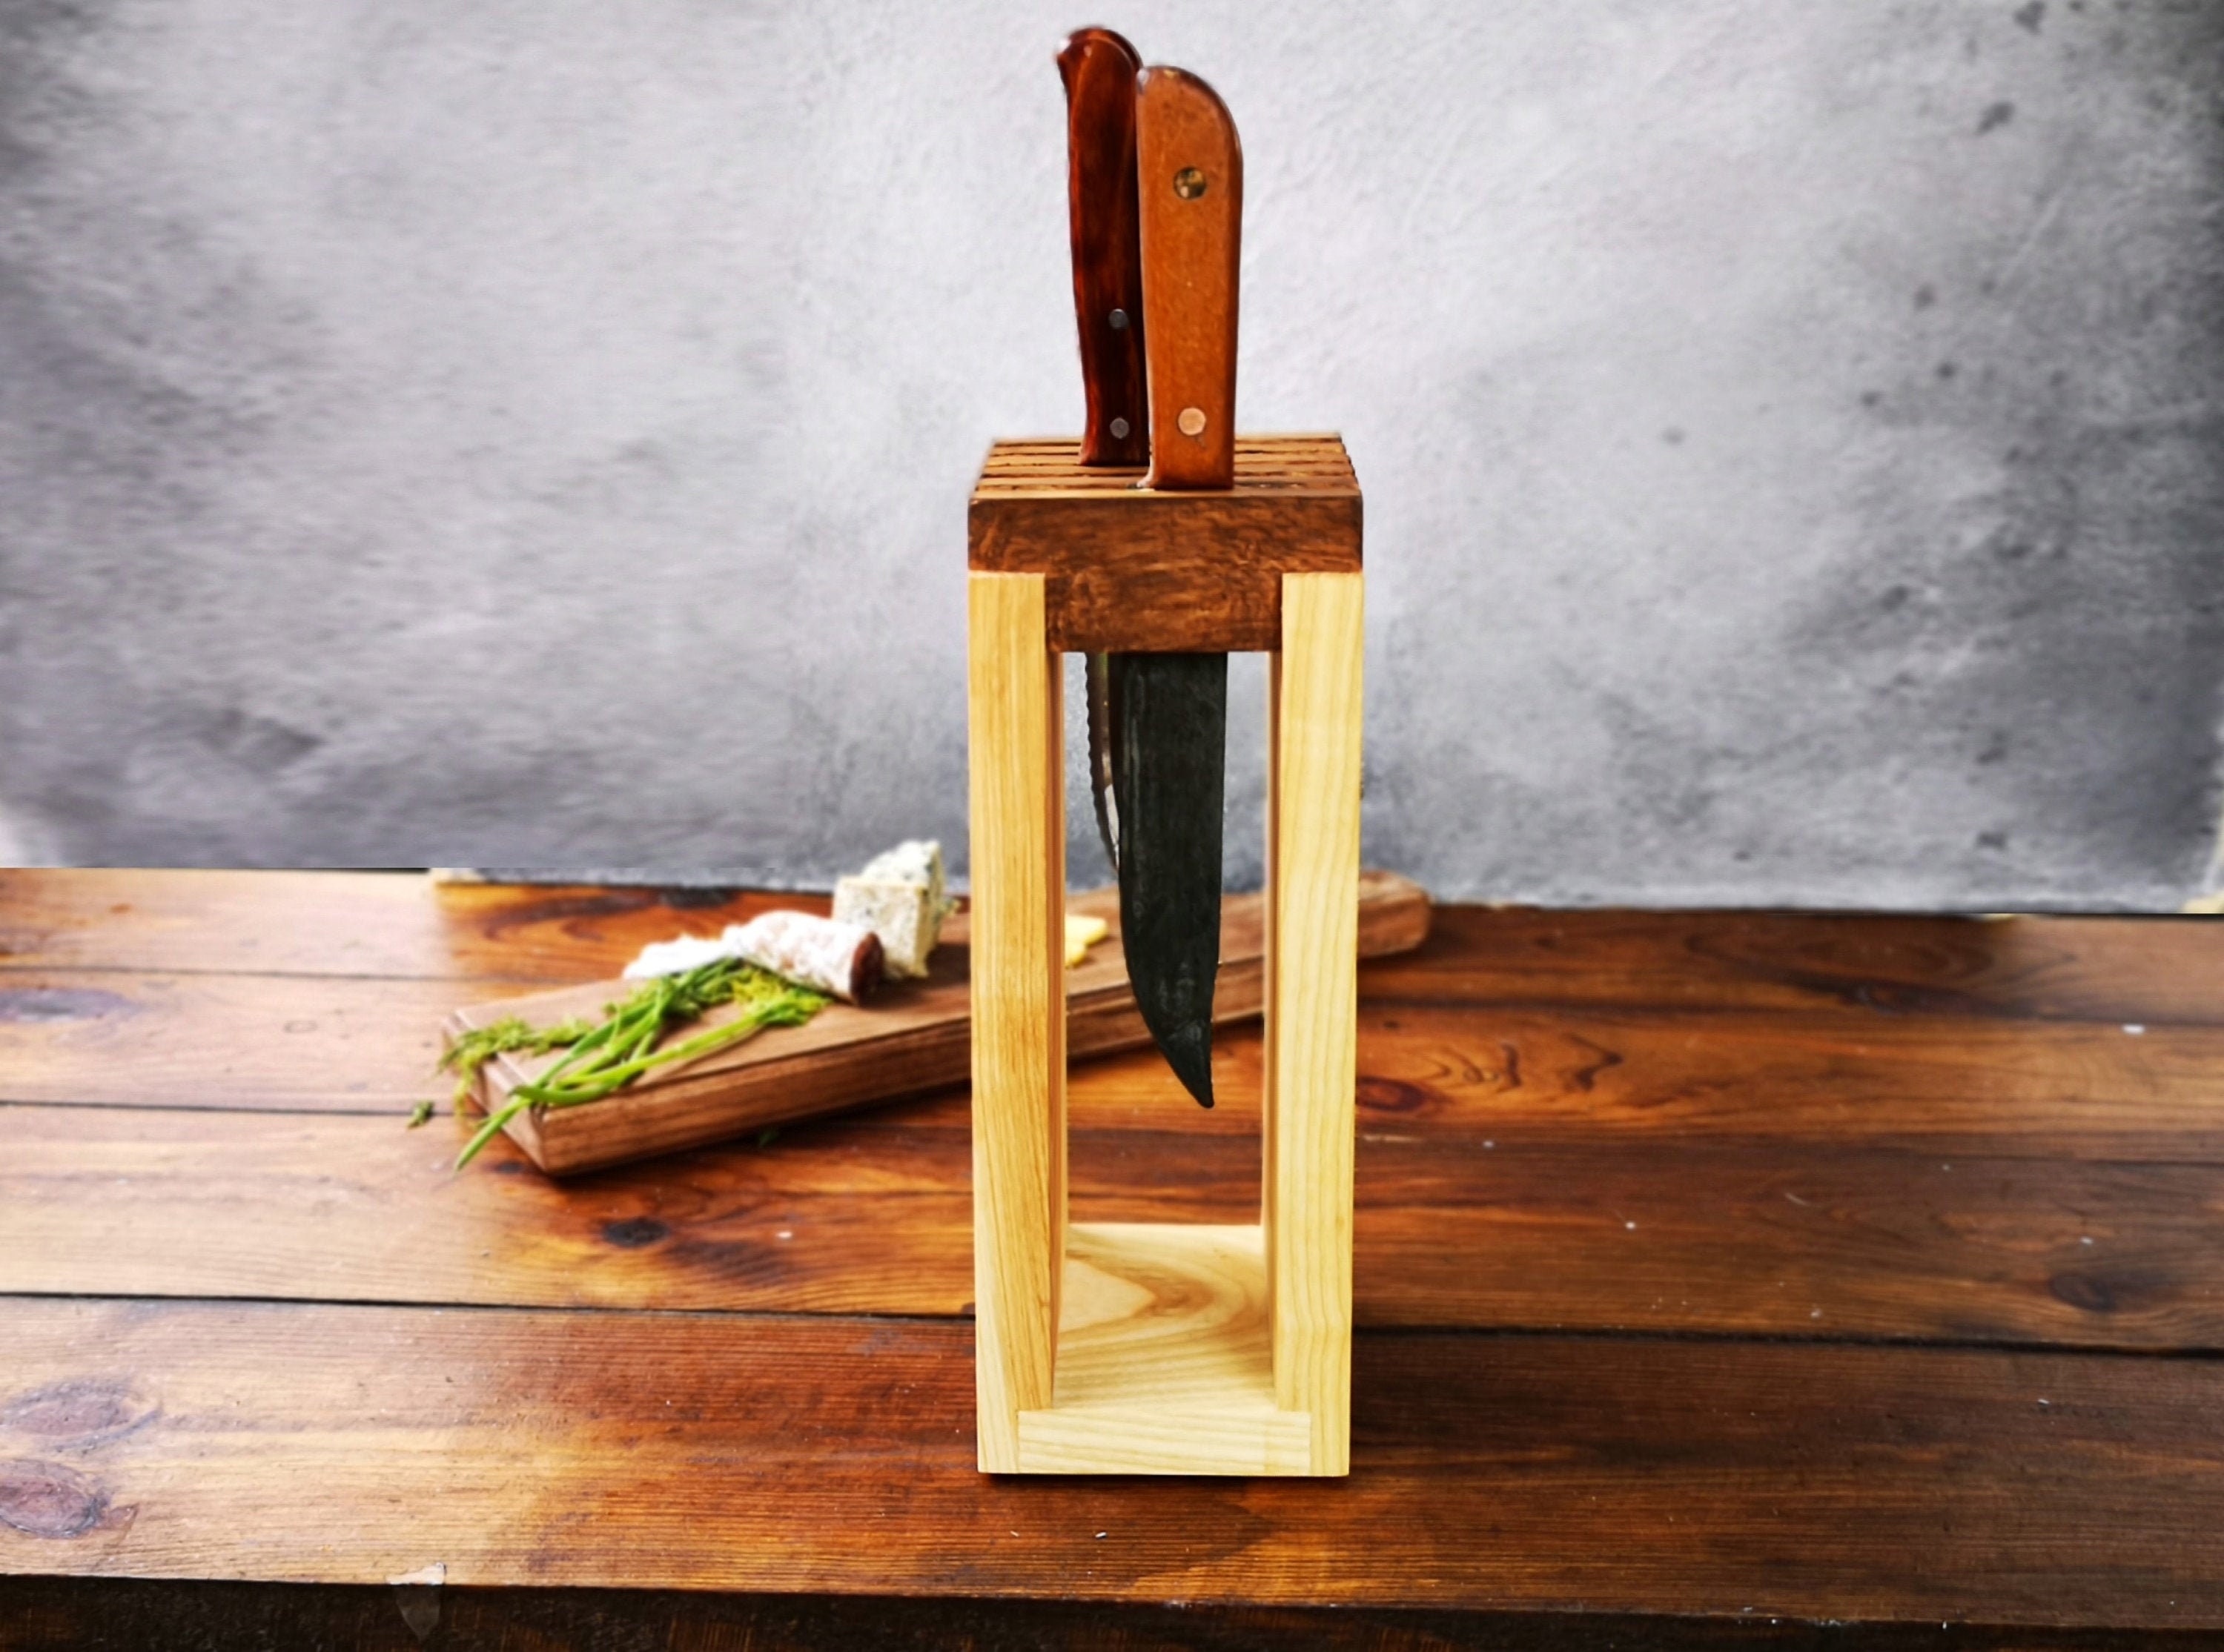 Oak Knife Block, Oak Knife Display, Wooden Knife Block, Oak Knife Rack, Oak  Kitchen Knife Block, Wooden Universal Knife Stand 